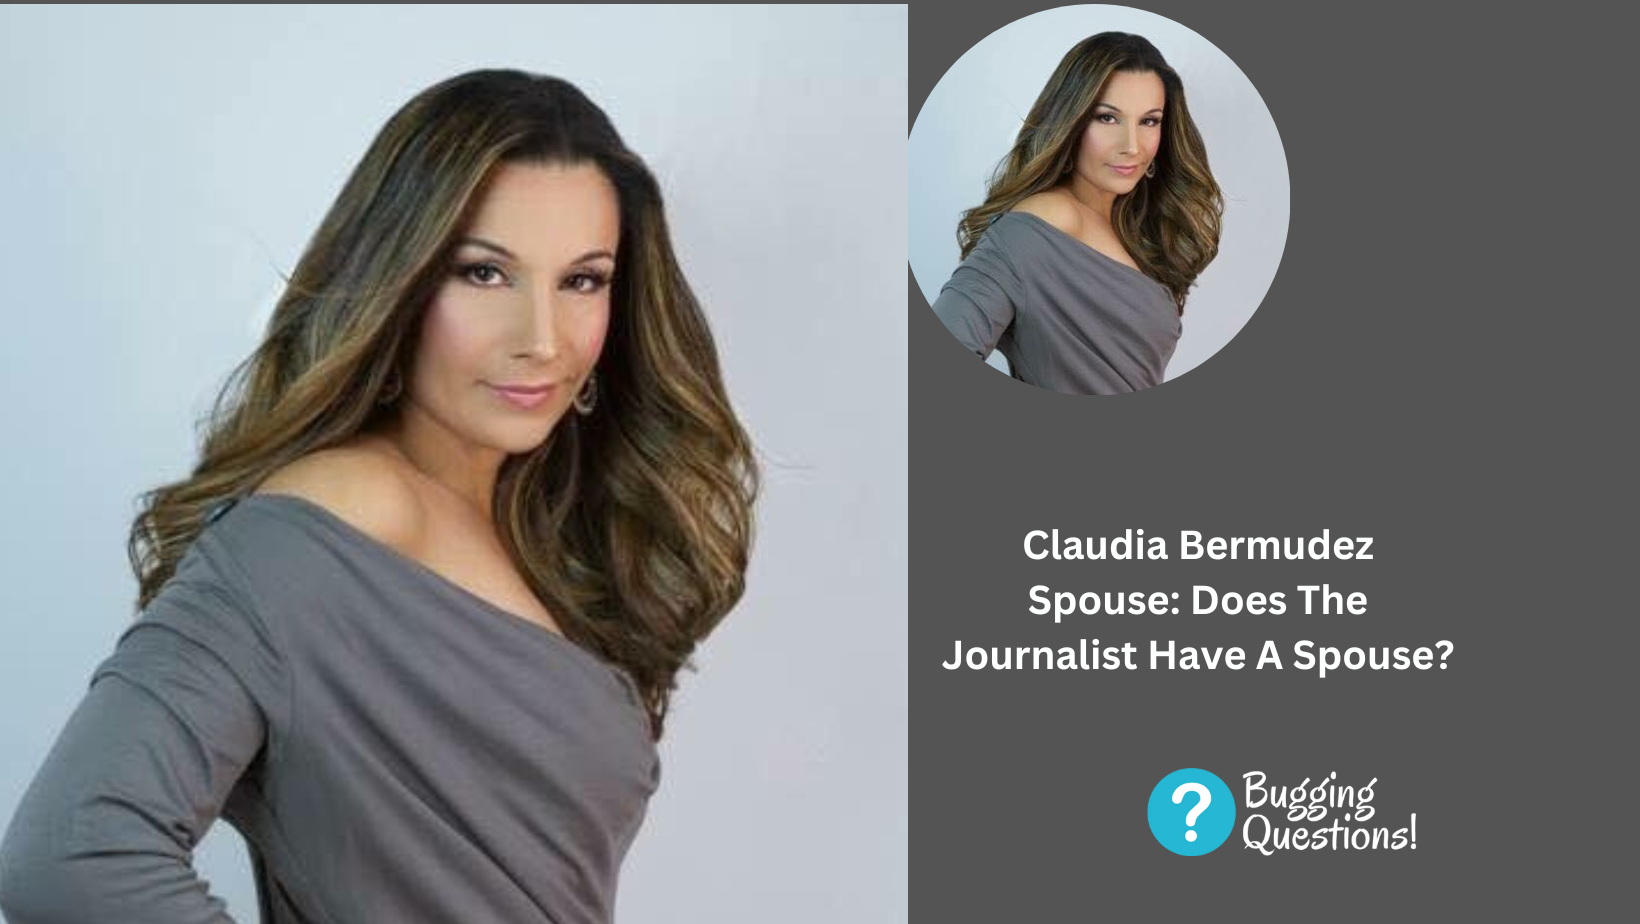 Claudia Bermudez Spouse: Does The Journalist Have A Spouse?